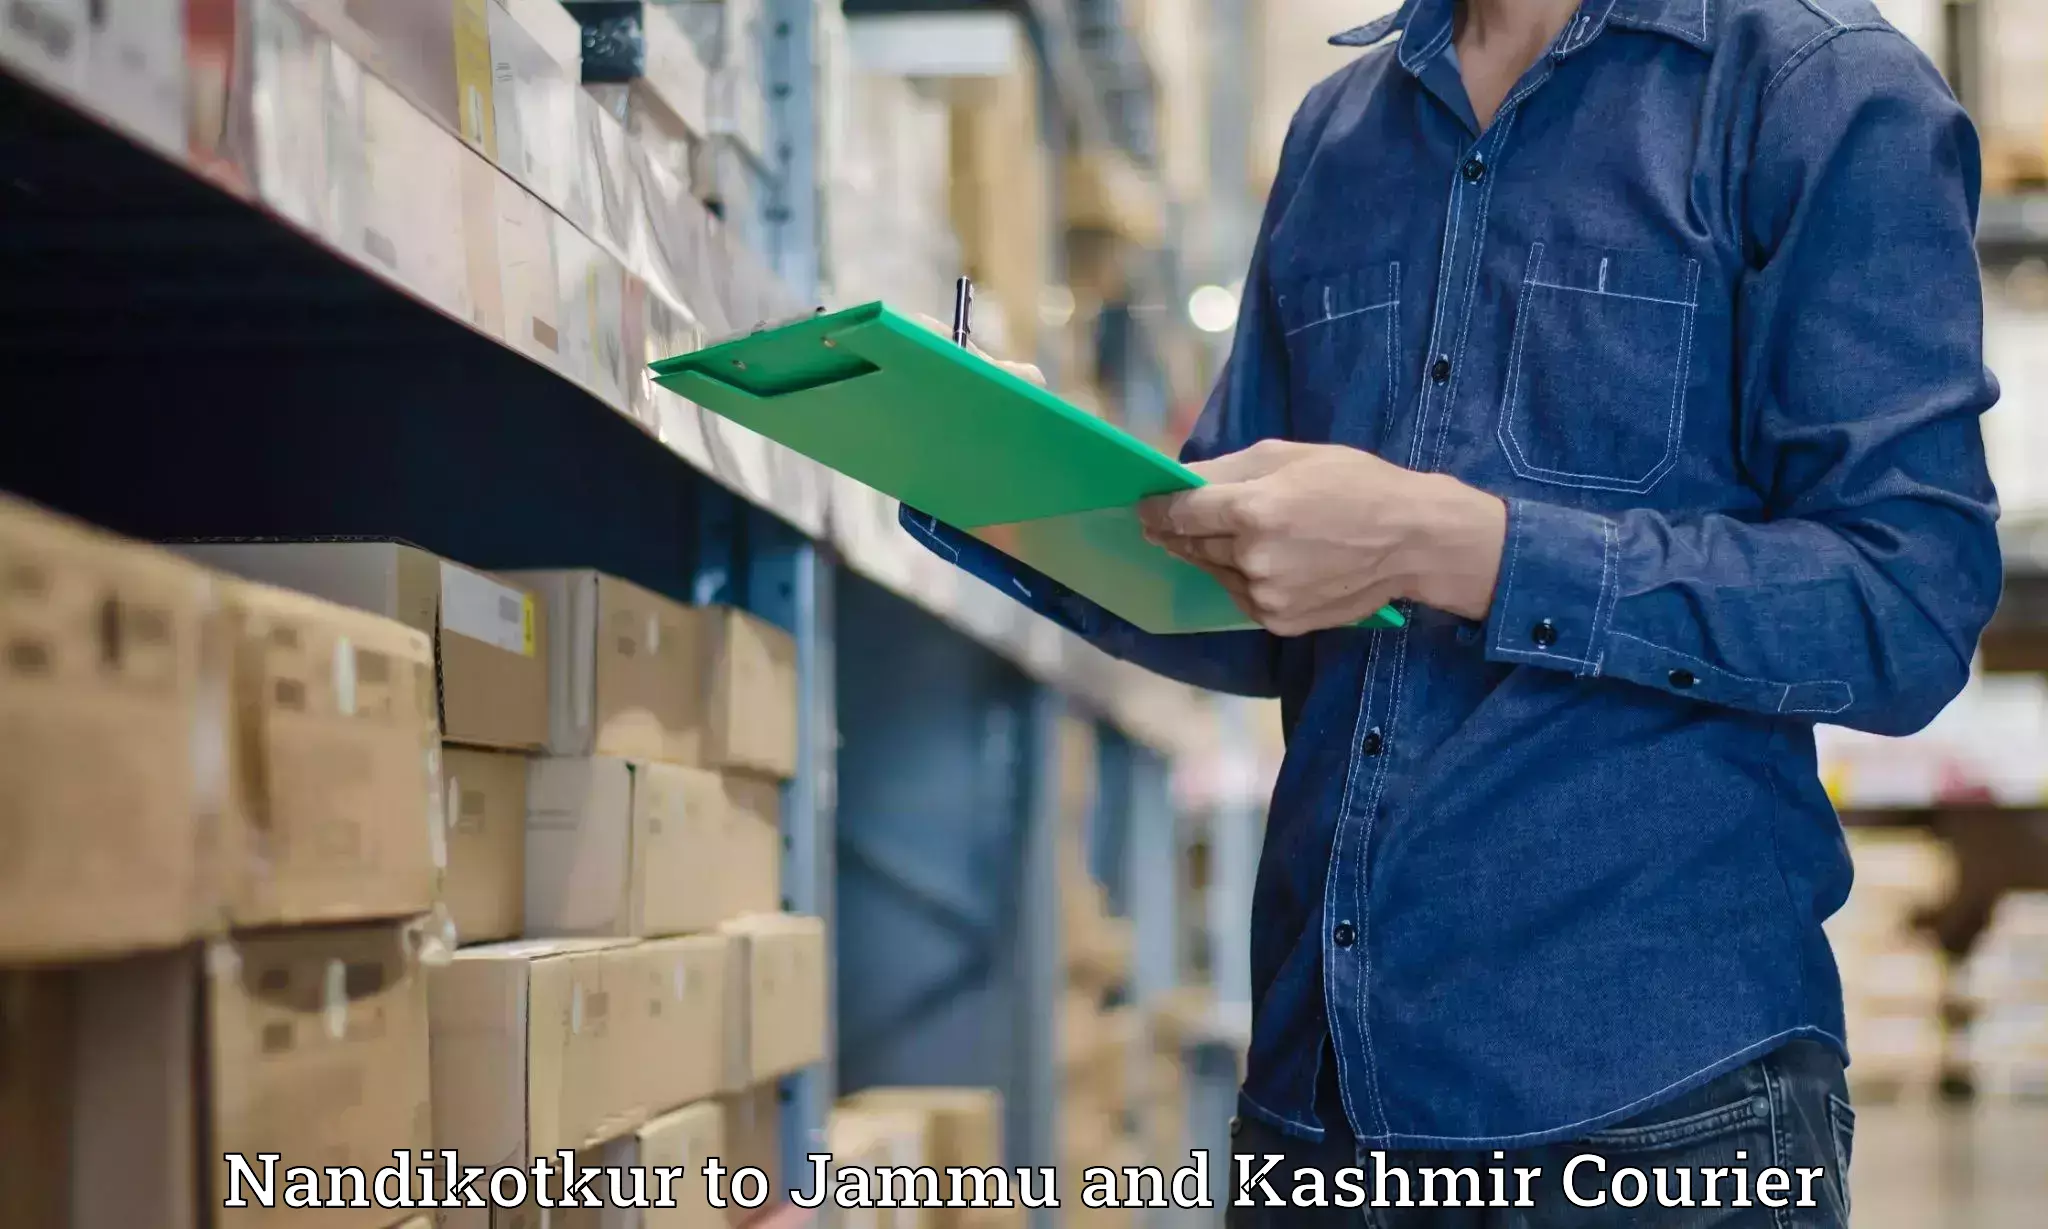 Professional courier handling in Nandikotkur to Bandipur